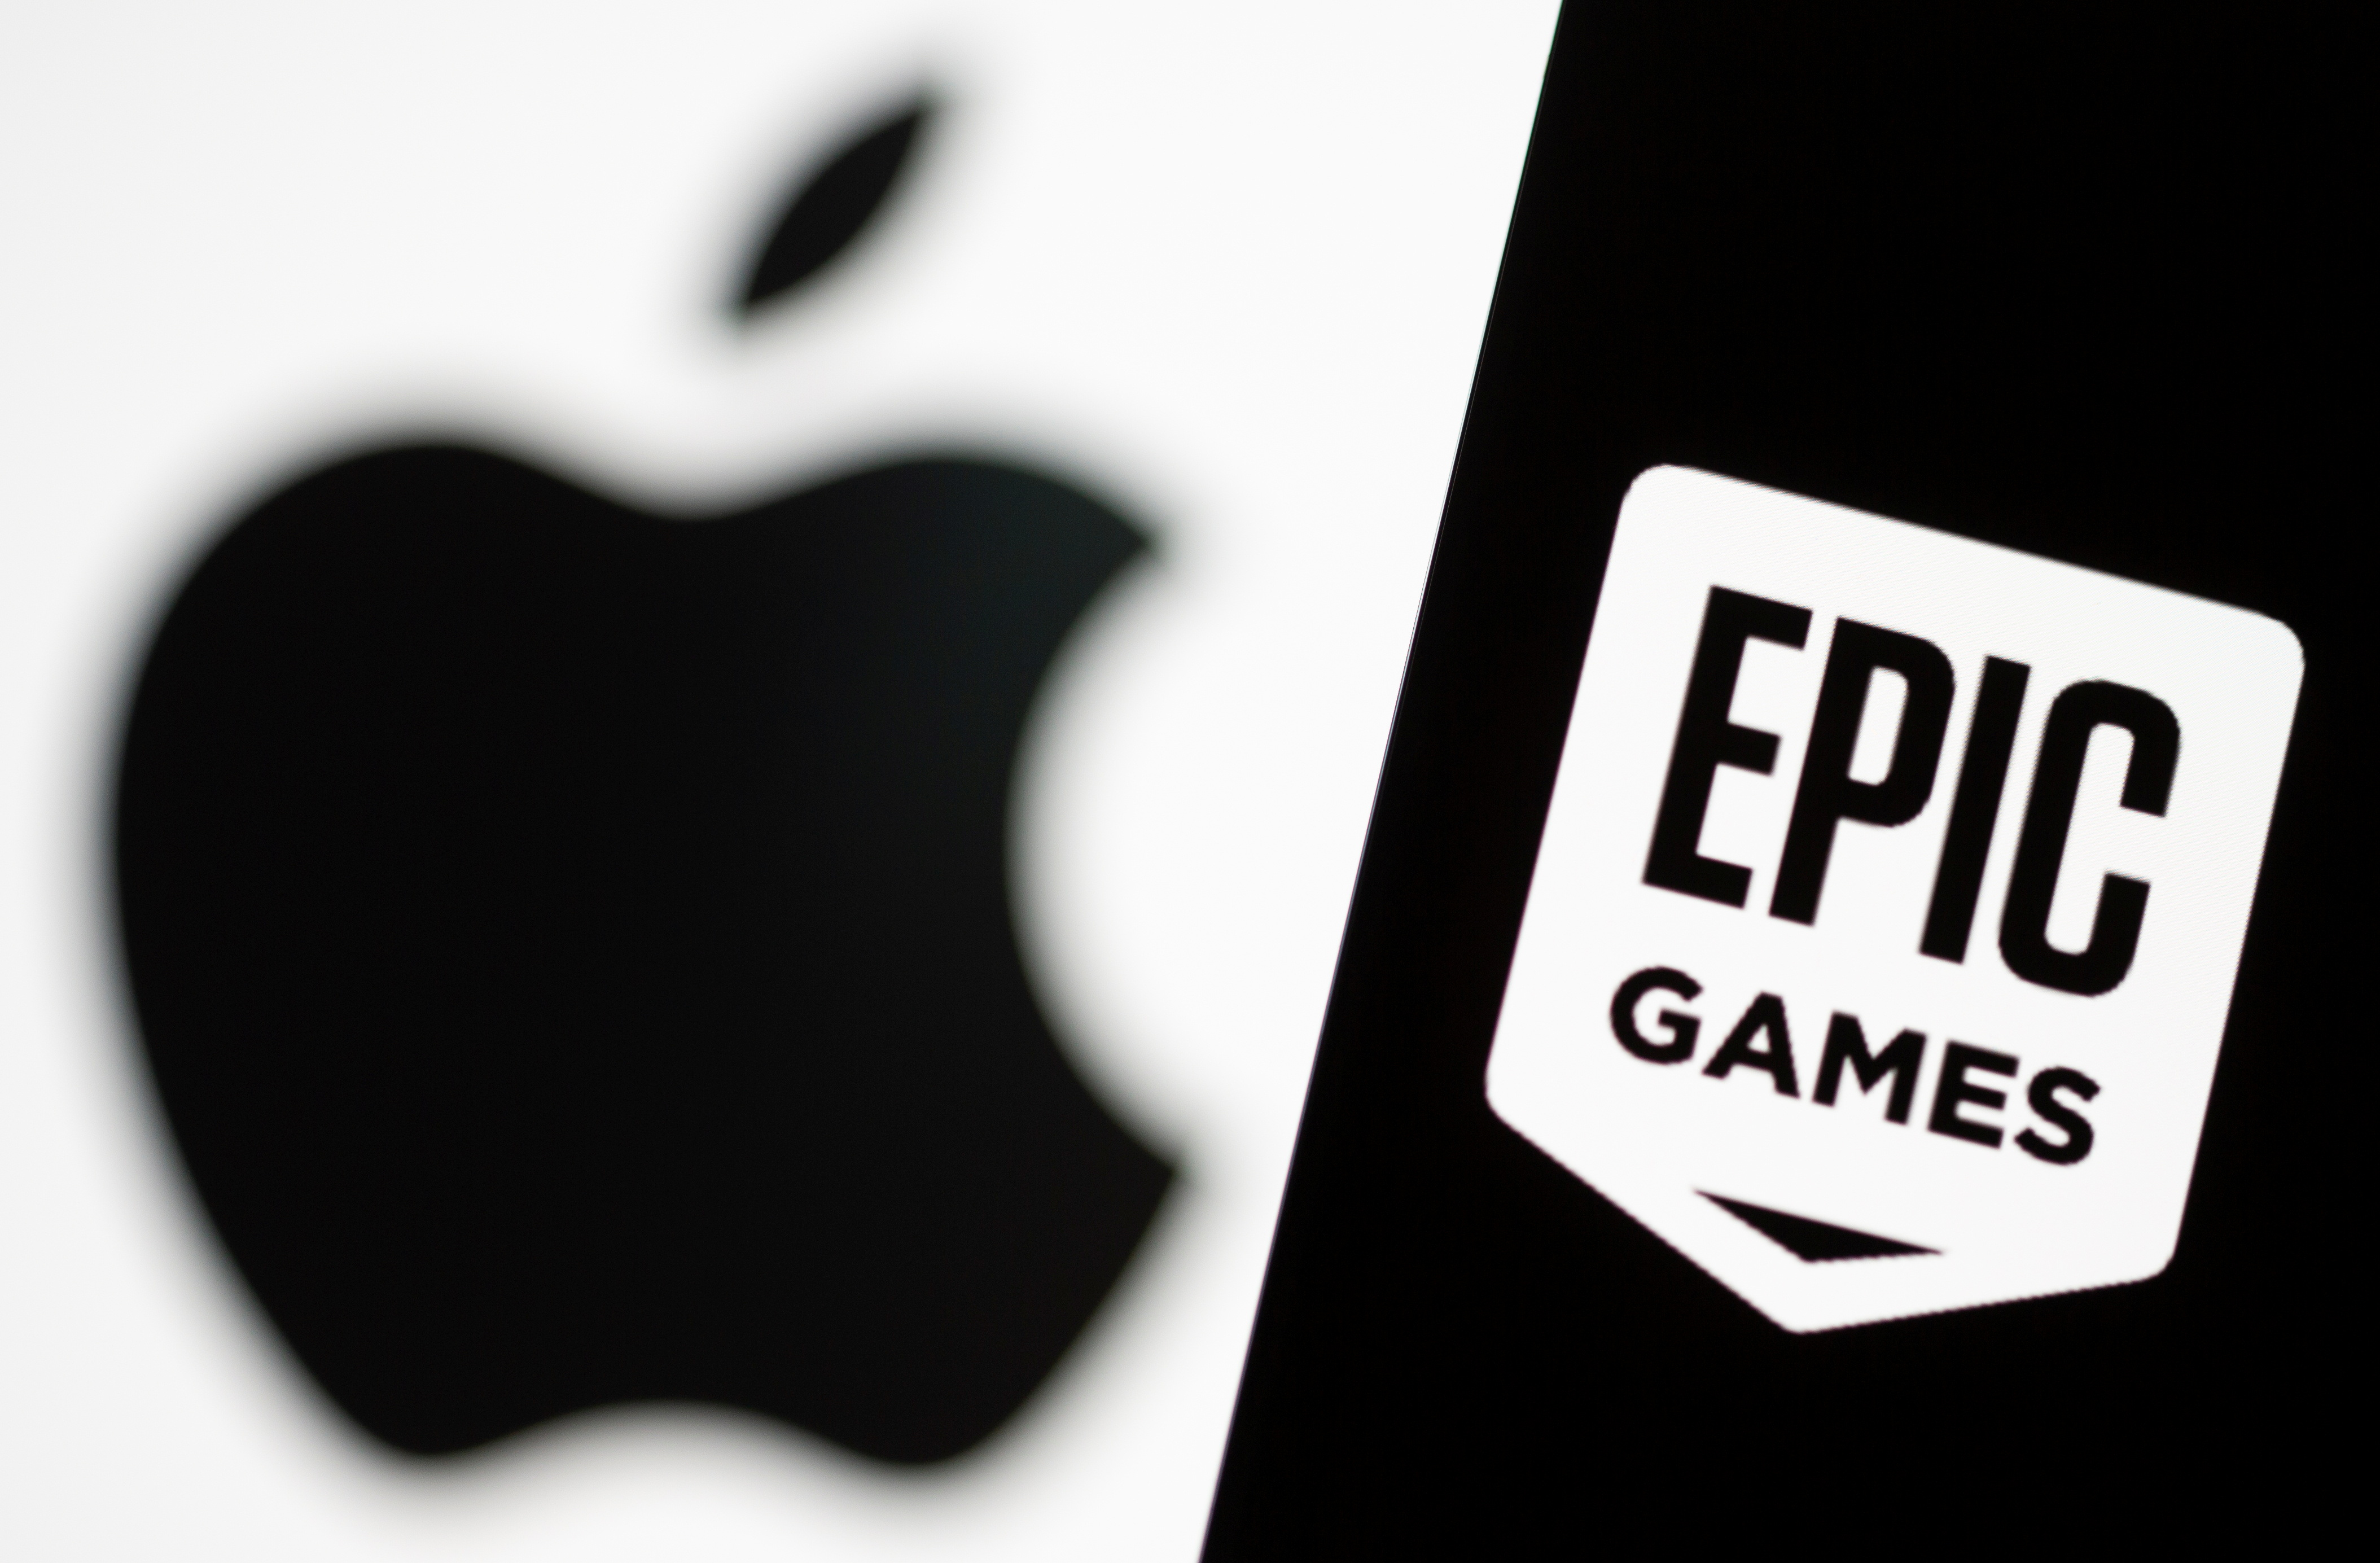 アップル、エピック・ゲームズの欧州での市場開設を阻止